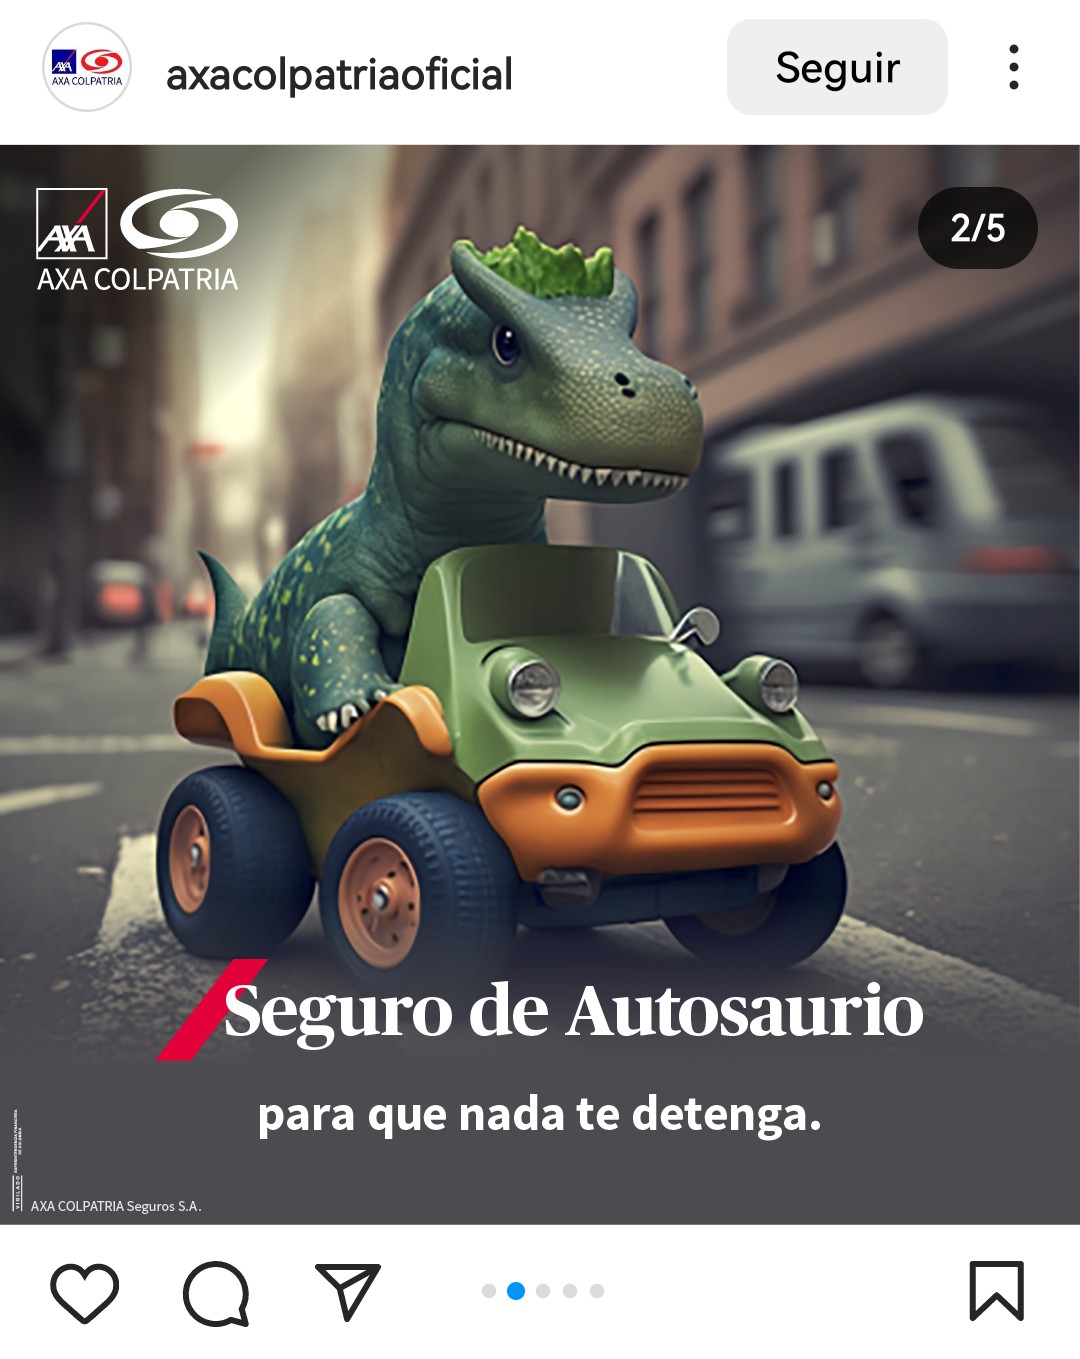 Ejemplo de publicidad de seguros de autos de Axa